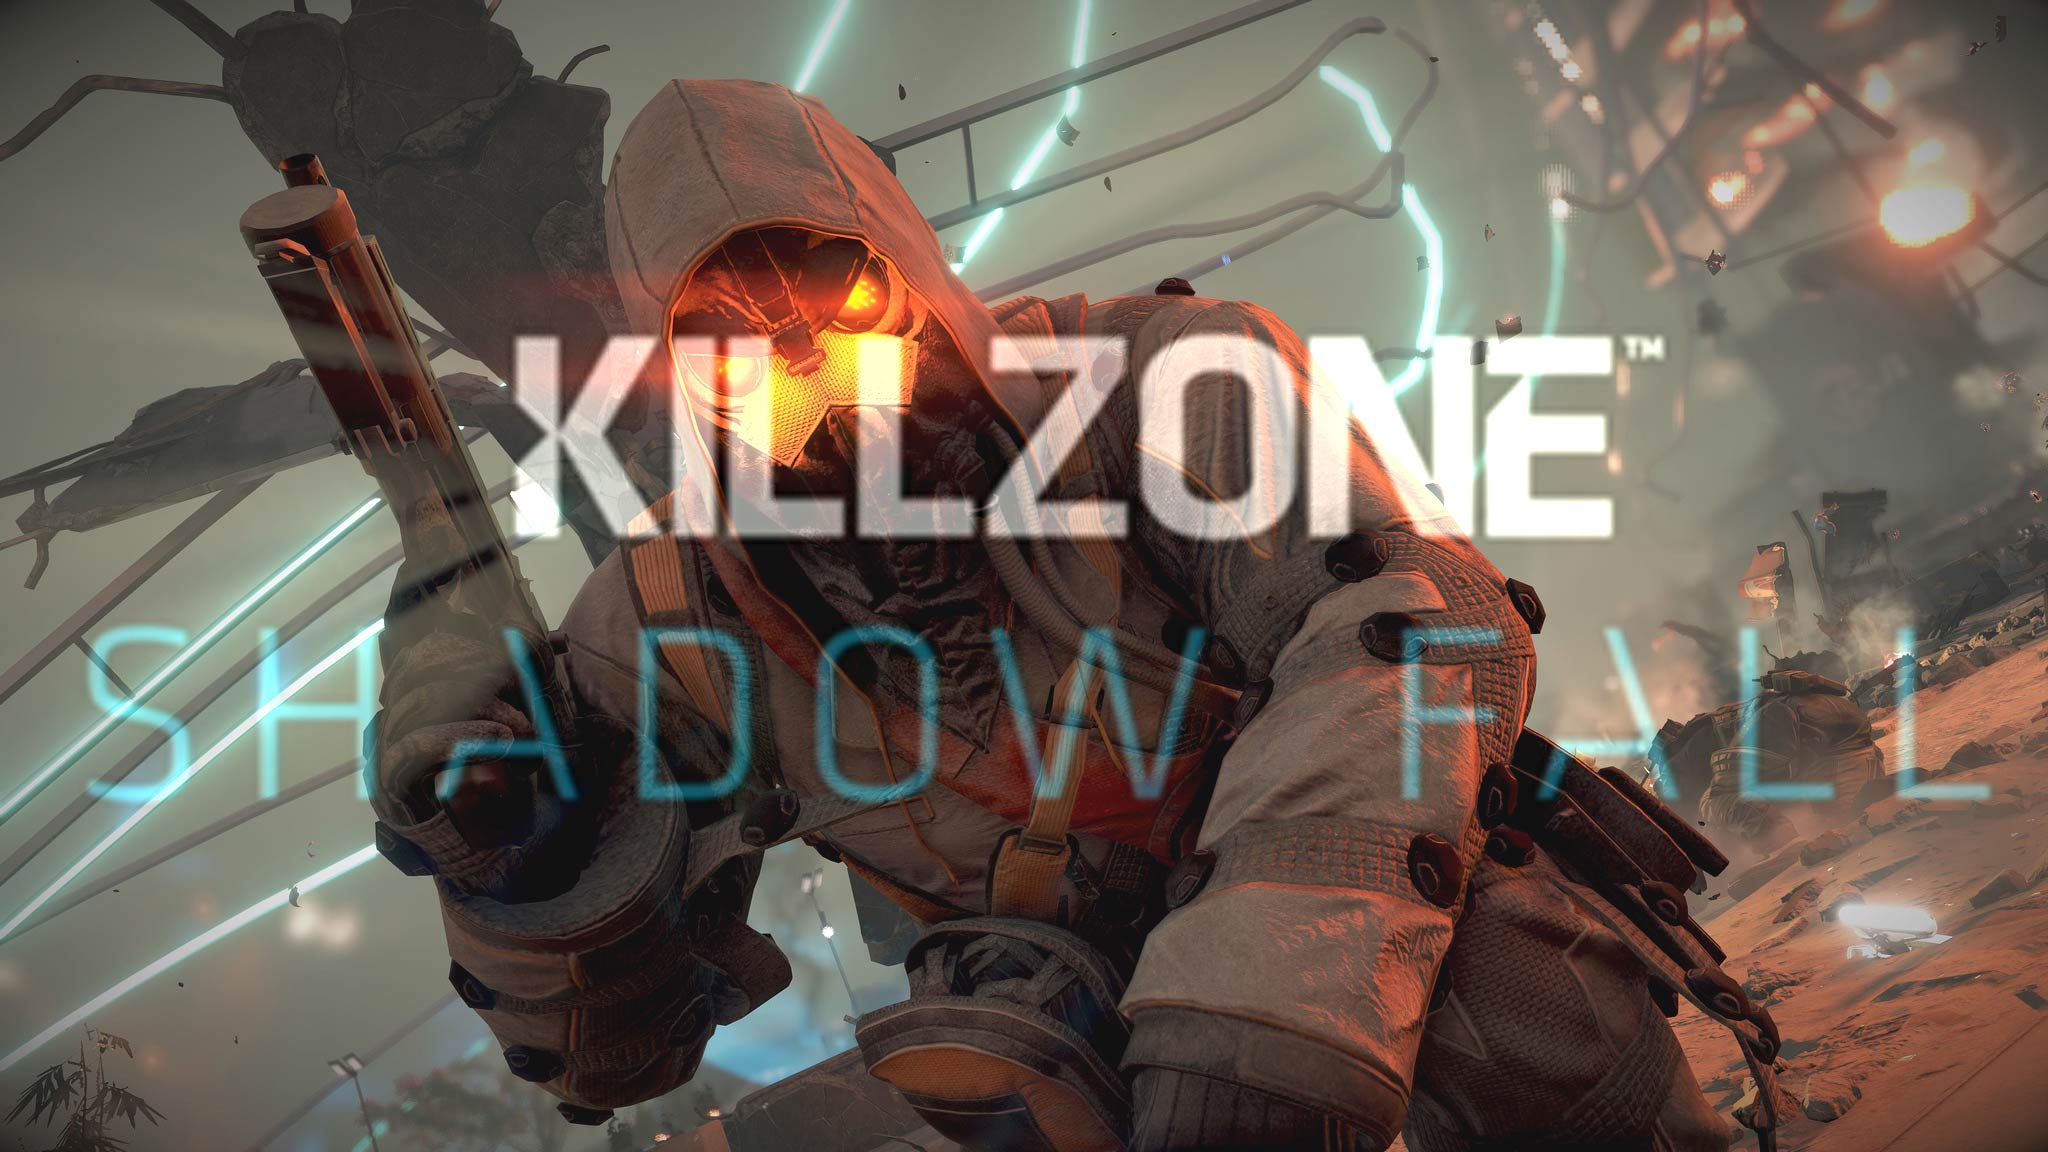 Guerrila anuncia el fin del online de Killzone Shadow Fall